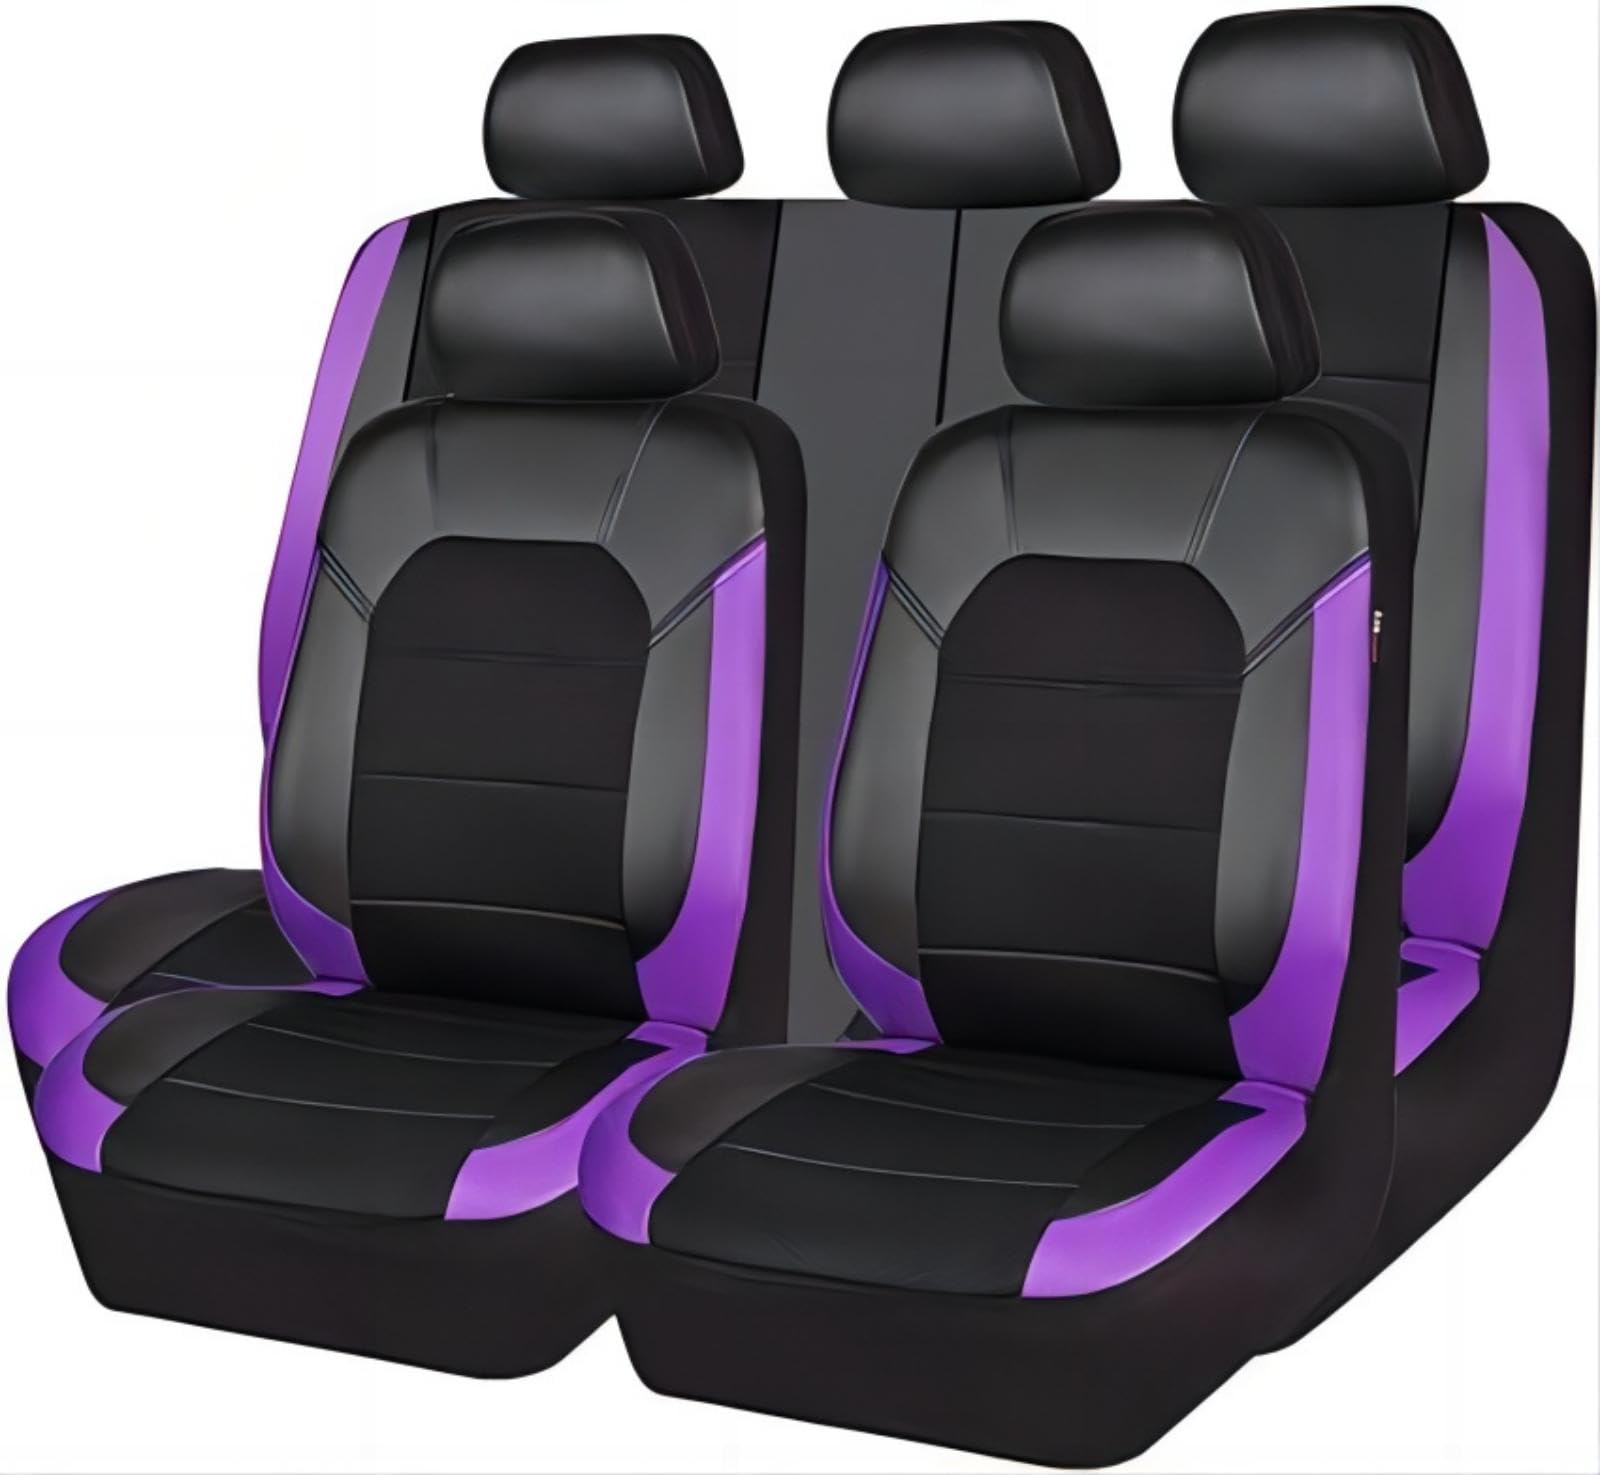 Ruby66 Auto Leder Sitzbezüge für Hyundai i10/i20/i30/i40/ix20/ix35/ix55/ioniq/ioniq 5/Kona/Grandezza, Bequem Wasserdicht rutschfest Sitzschoner, Leicht zu Reinigen, Schön, Auto Zubehör,Purple von Ruby66